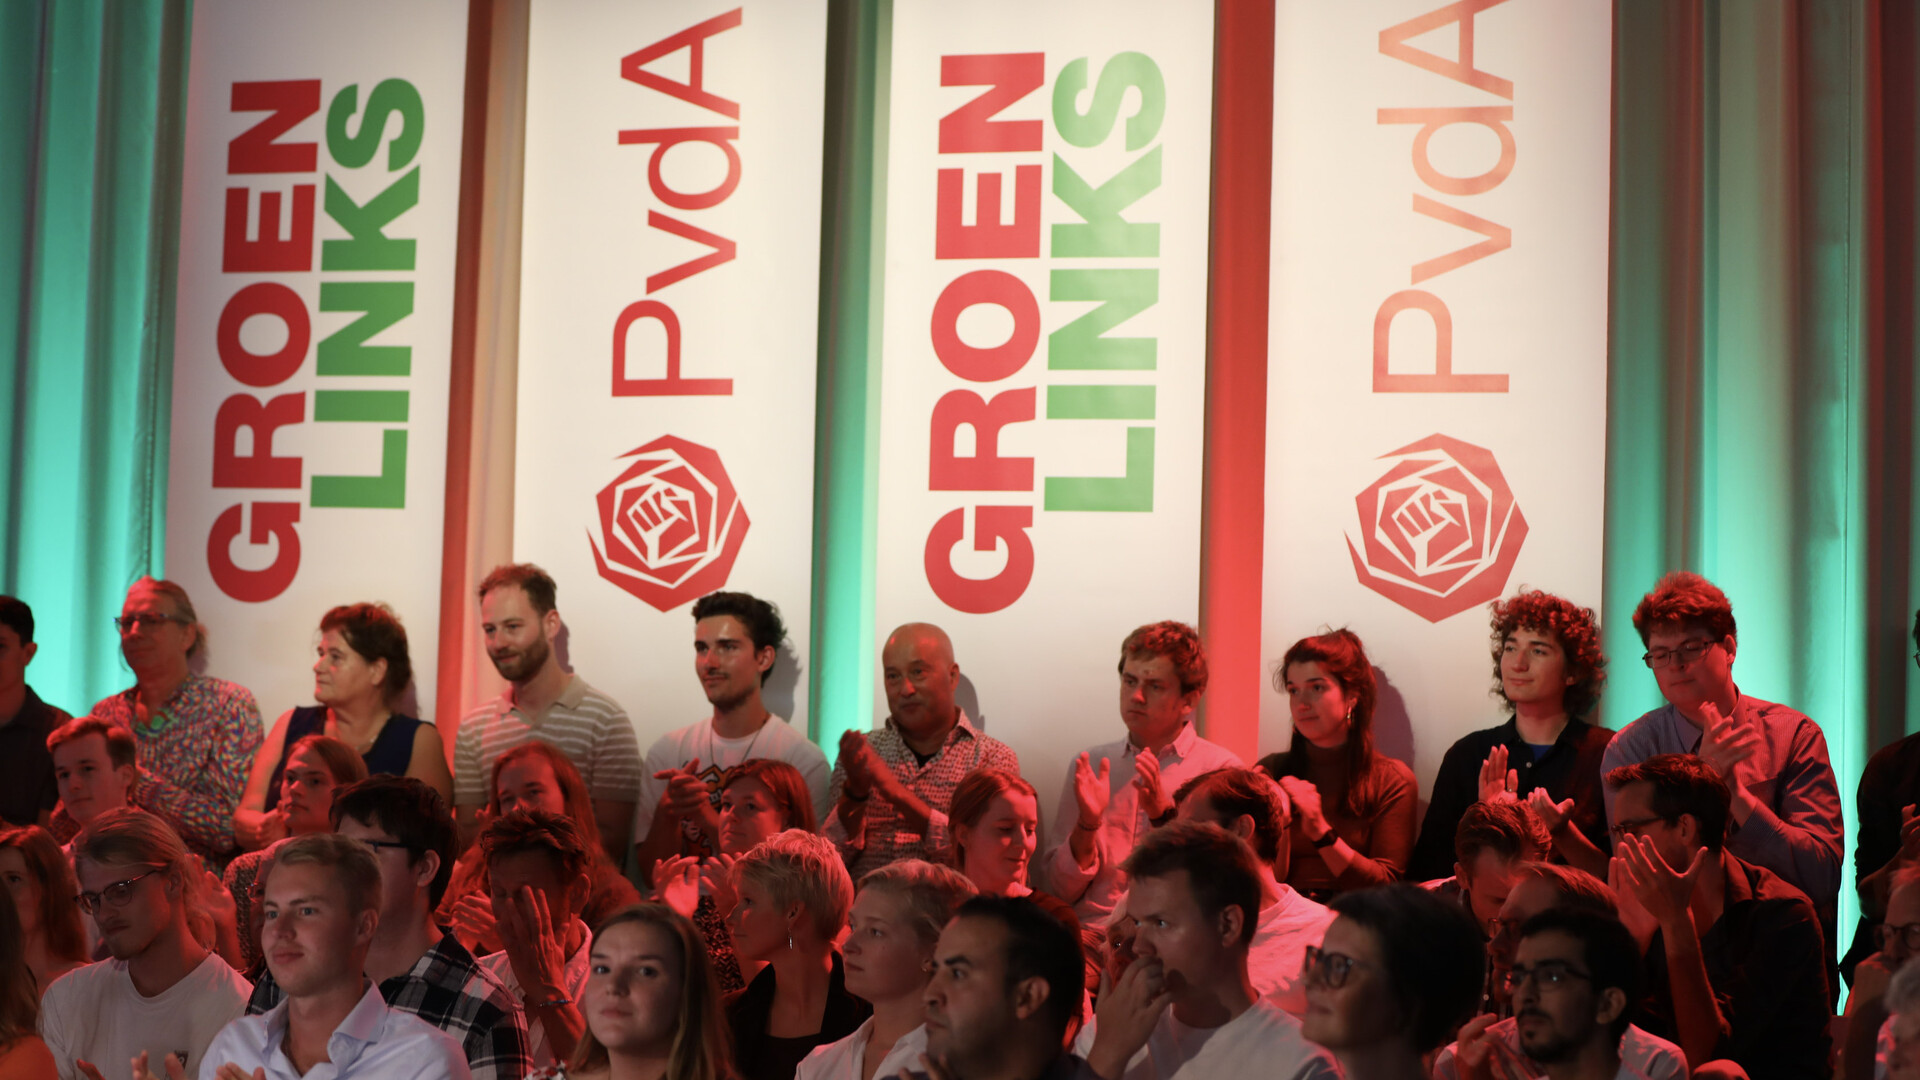 Banieren met de logo's van GroenLinks en PvdA met daarvoor een publiek